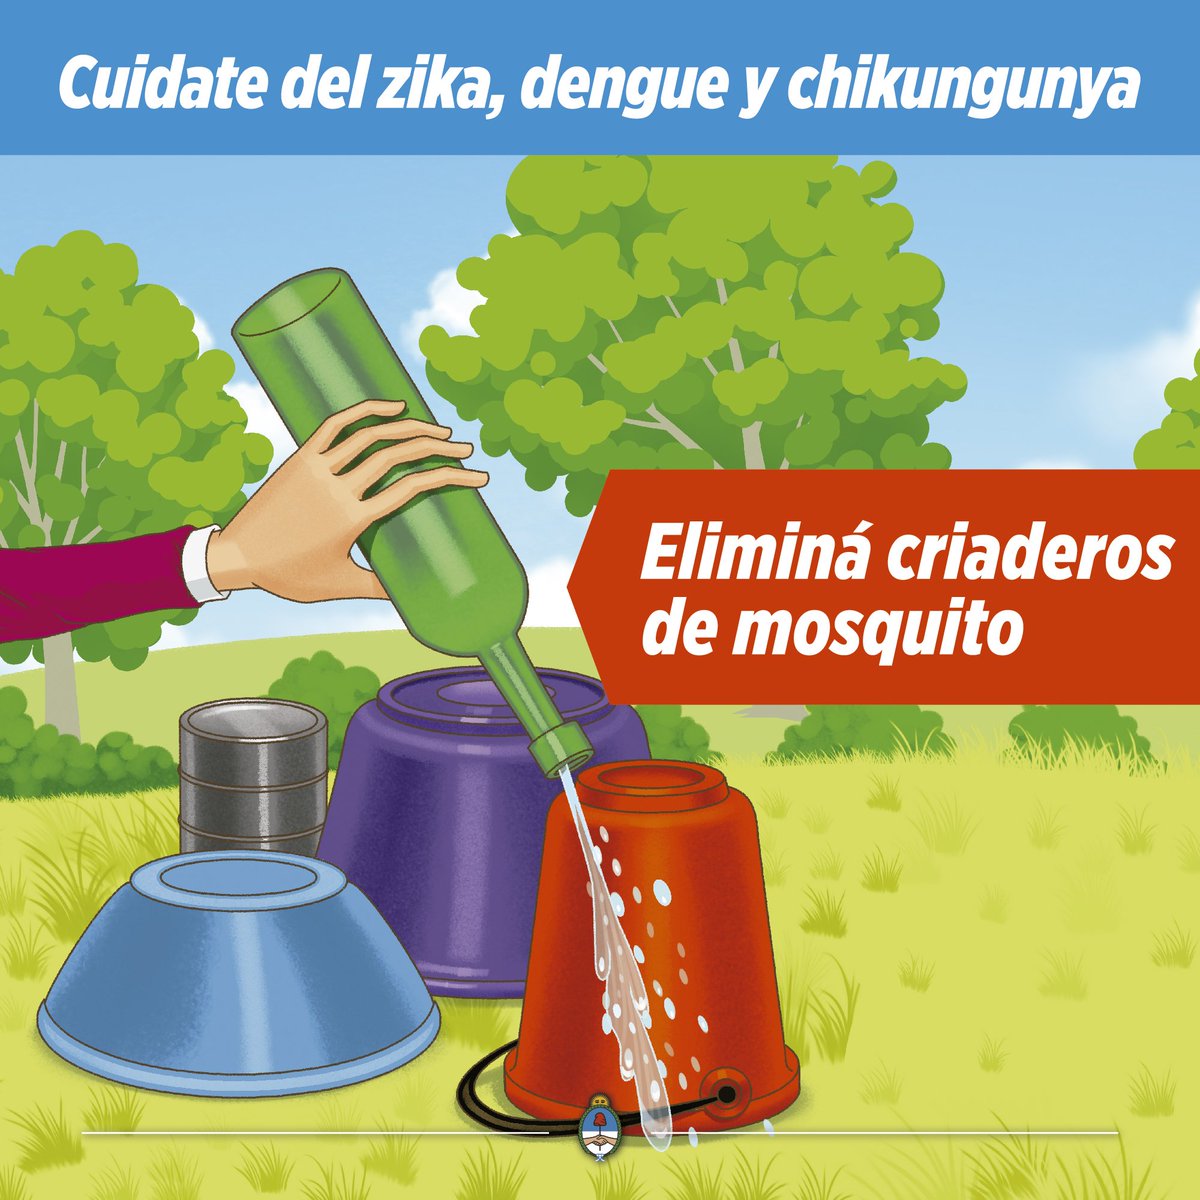 Pasto temblor Arte Ministerio de Salud de la Nación on Twitter: "¿Cómo prevenir el #zika, # dengue, y #chikungunya? Eliminá los criaderos de #mosquitos y usá  repelentes. Más info: https://t.co/mXoLUxTEZ8 https://t.co/cZx8udLlGt" /  Twitter